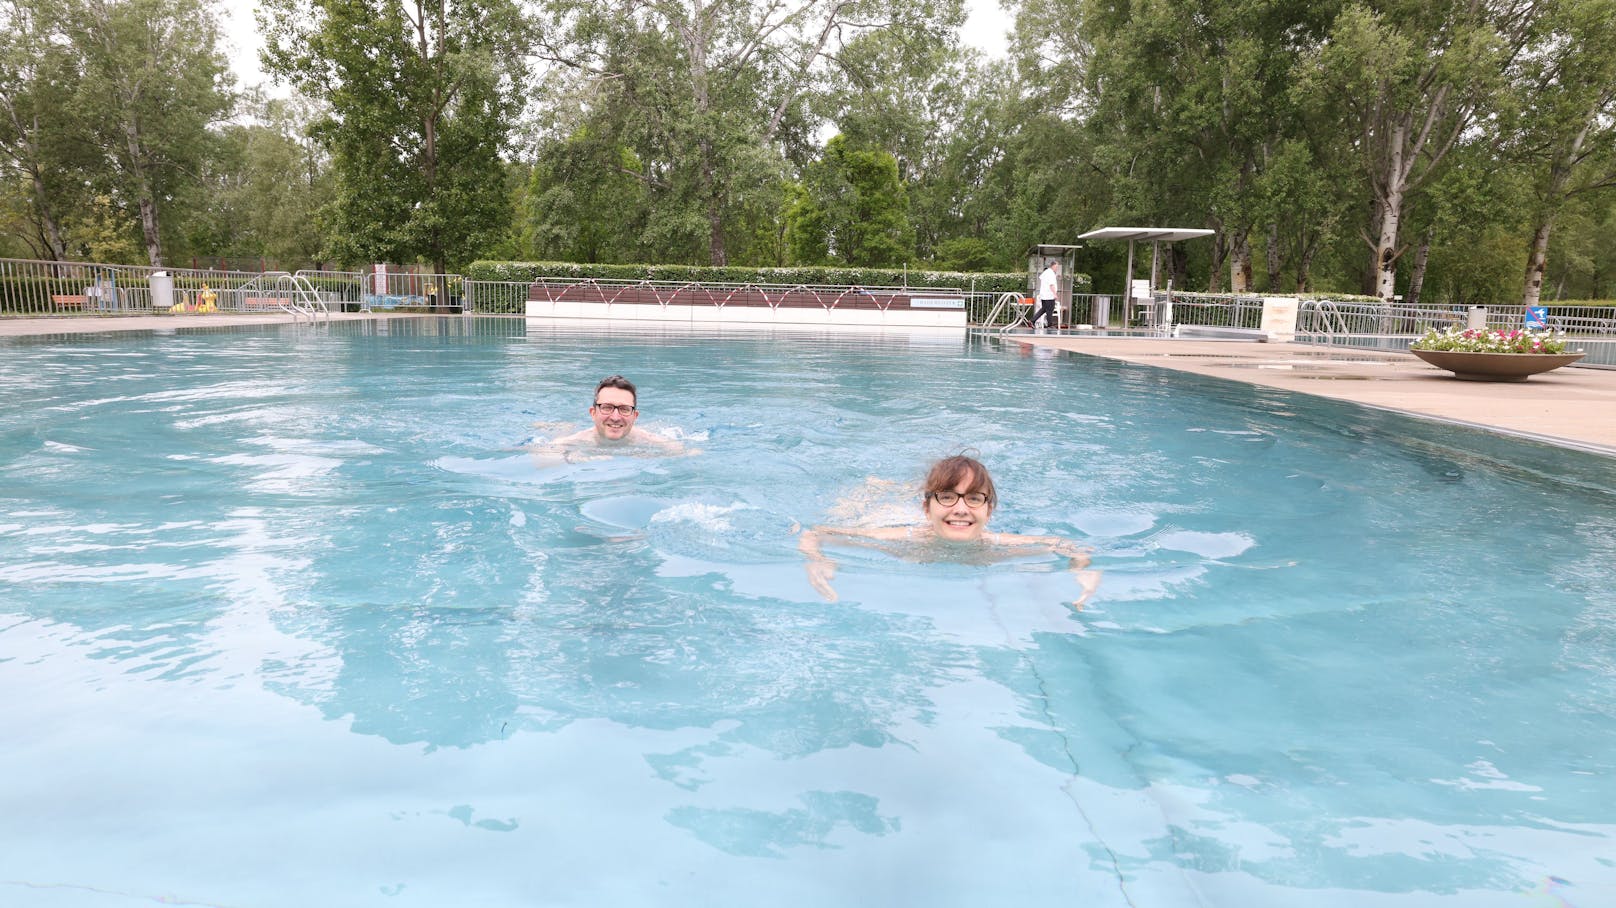 Kaum ist nach dem Corona-Winter wieder offen, sind Tabea (31) und Michael (42) auch schon die Ersten die im Wiener Gänsehäufel trotz wechselhaftem Wetter in den Pool springen.